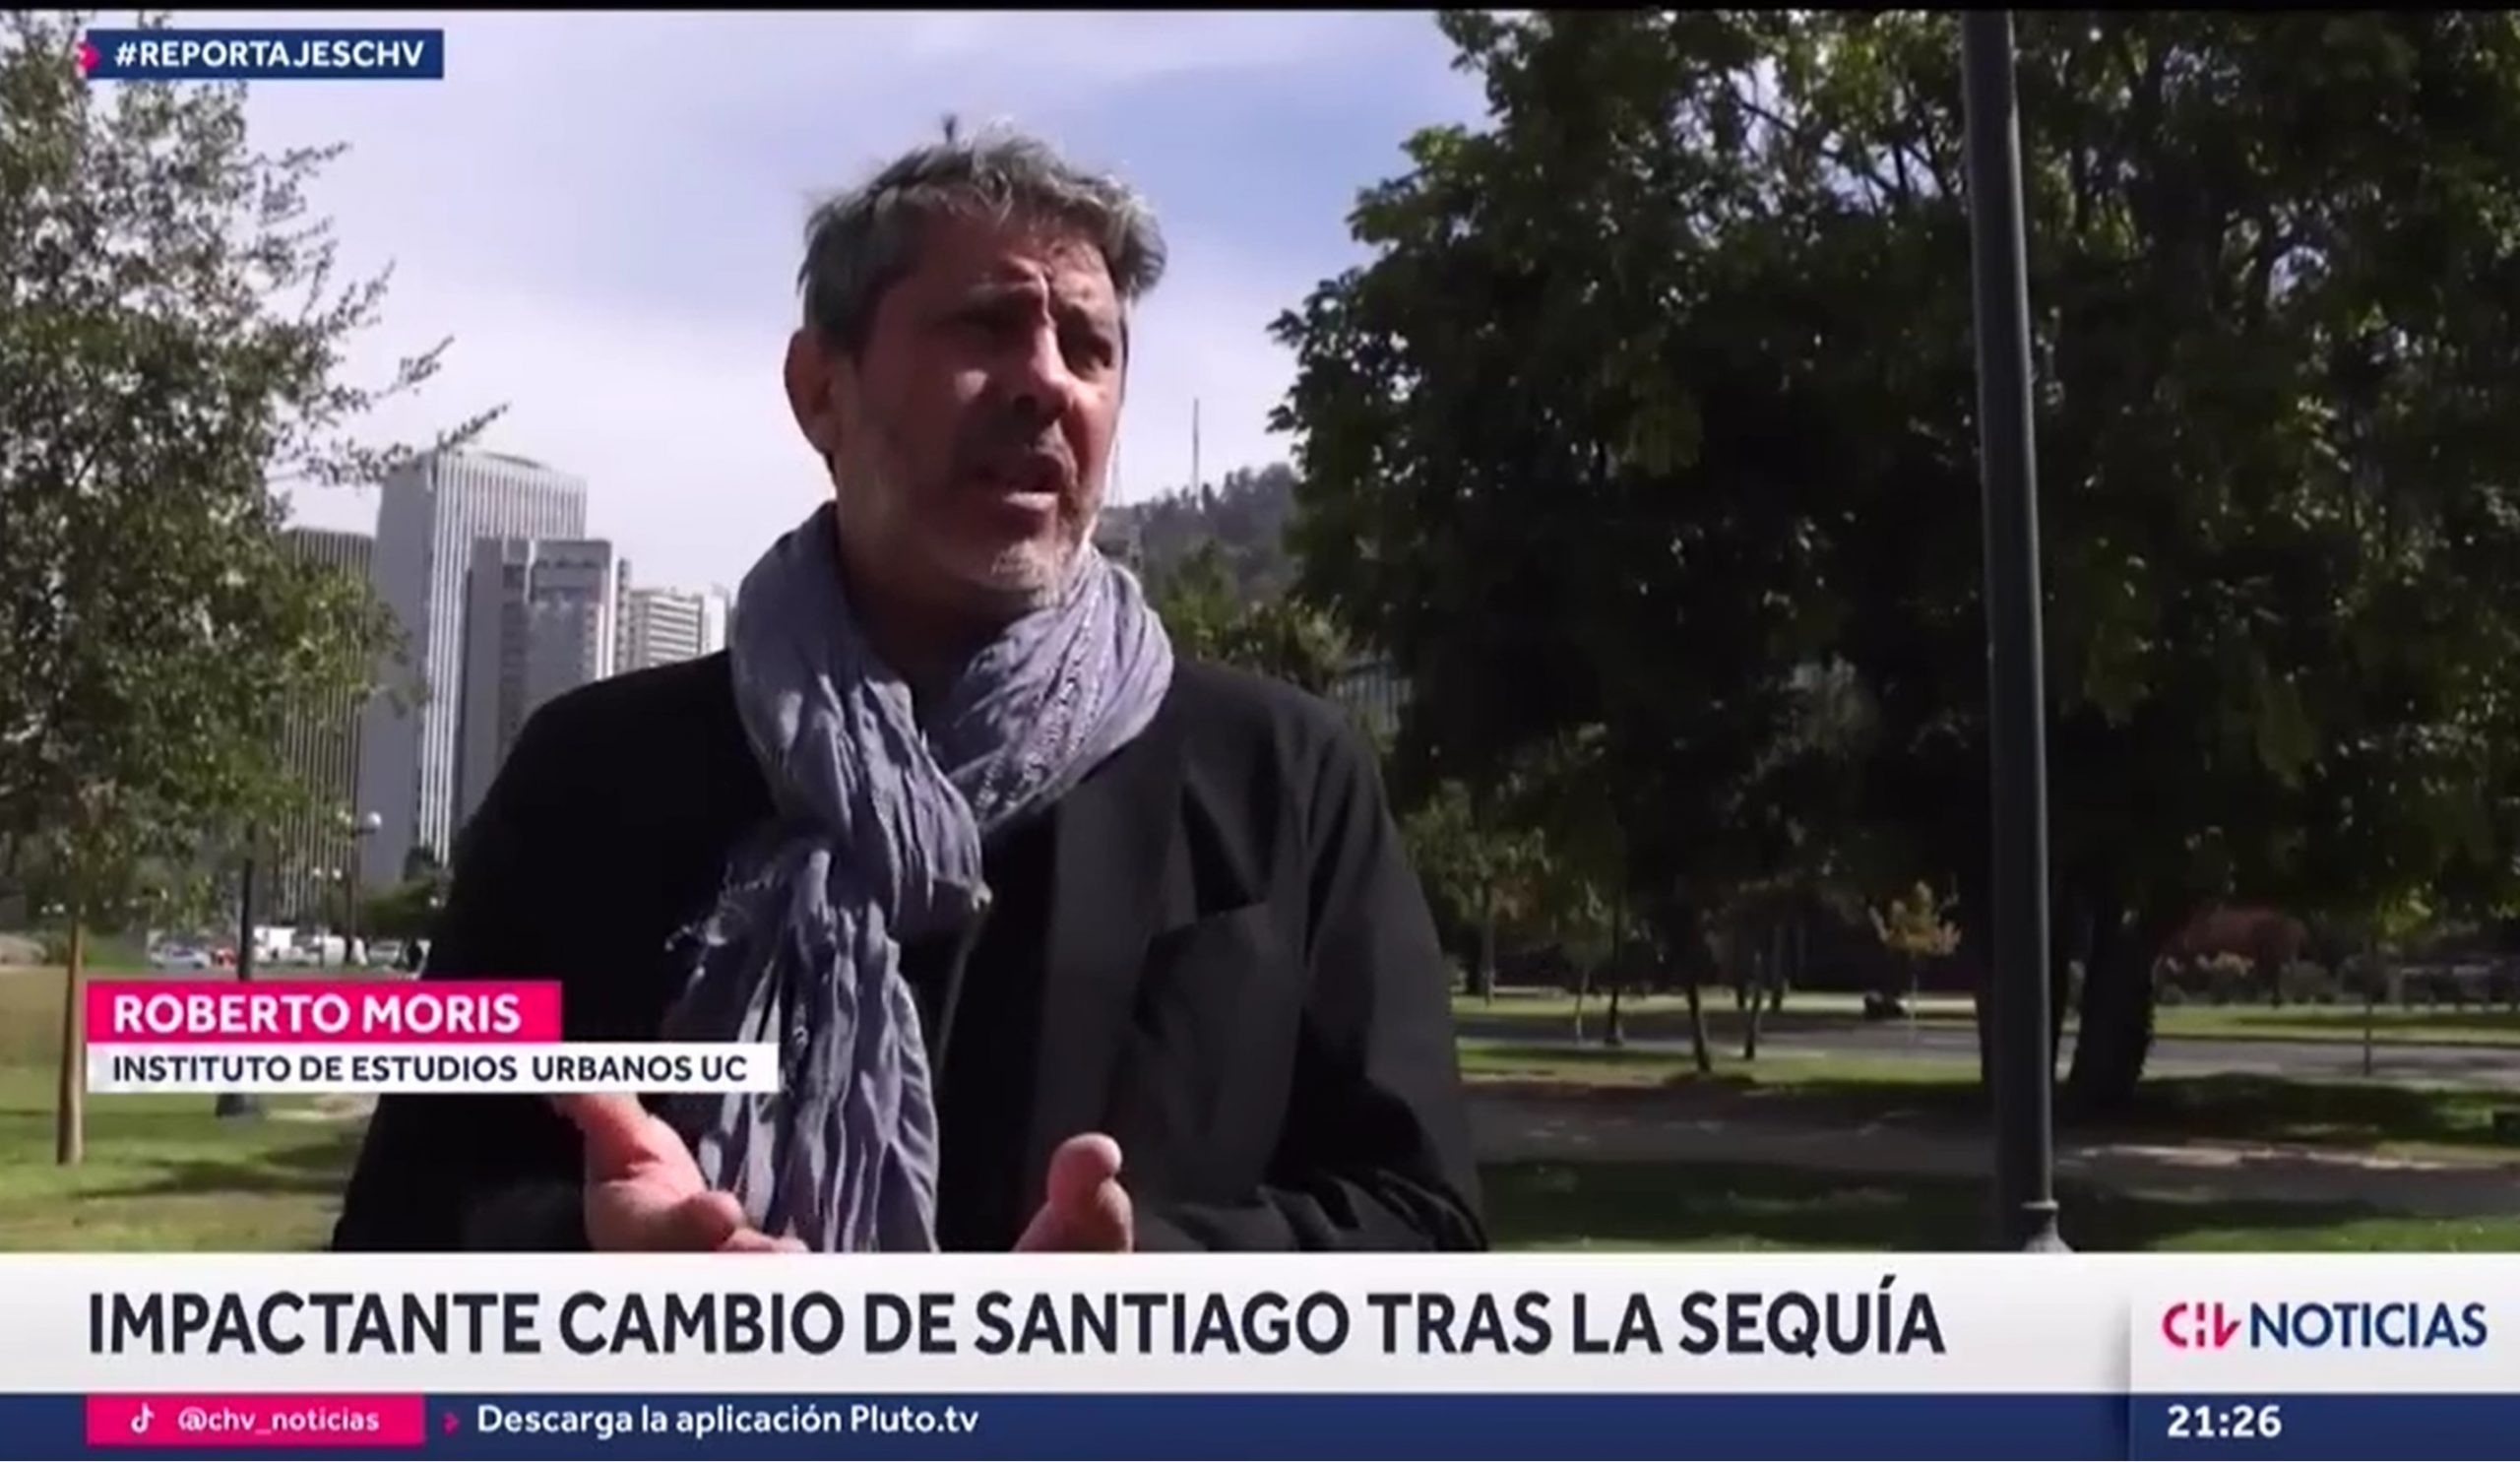 Reportajes Chilevisión: Impactante cambio en Santiago tras la sequía